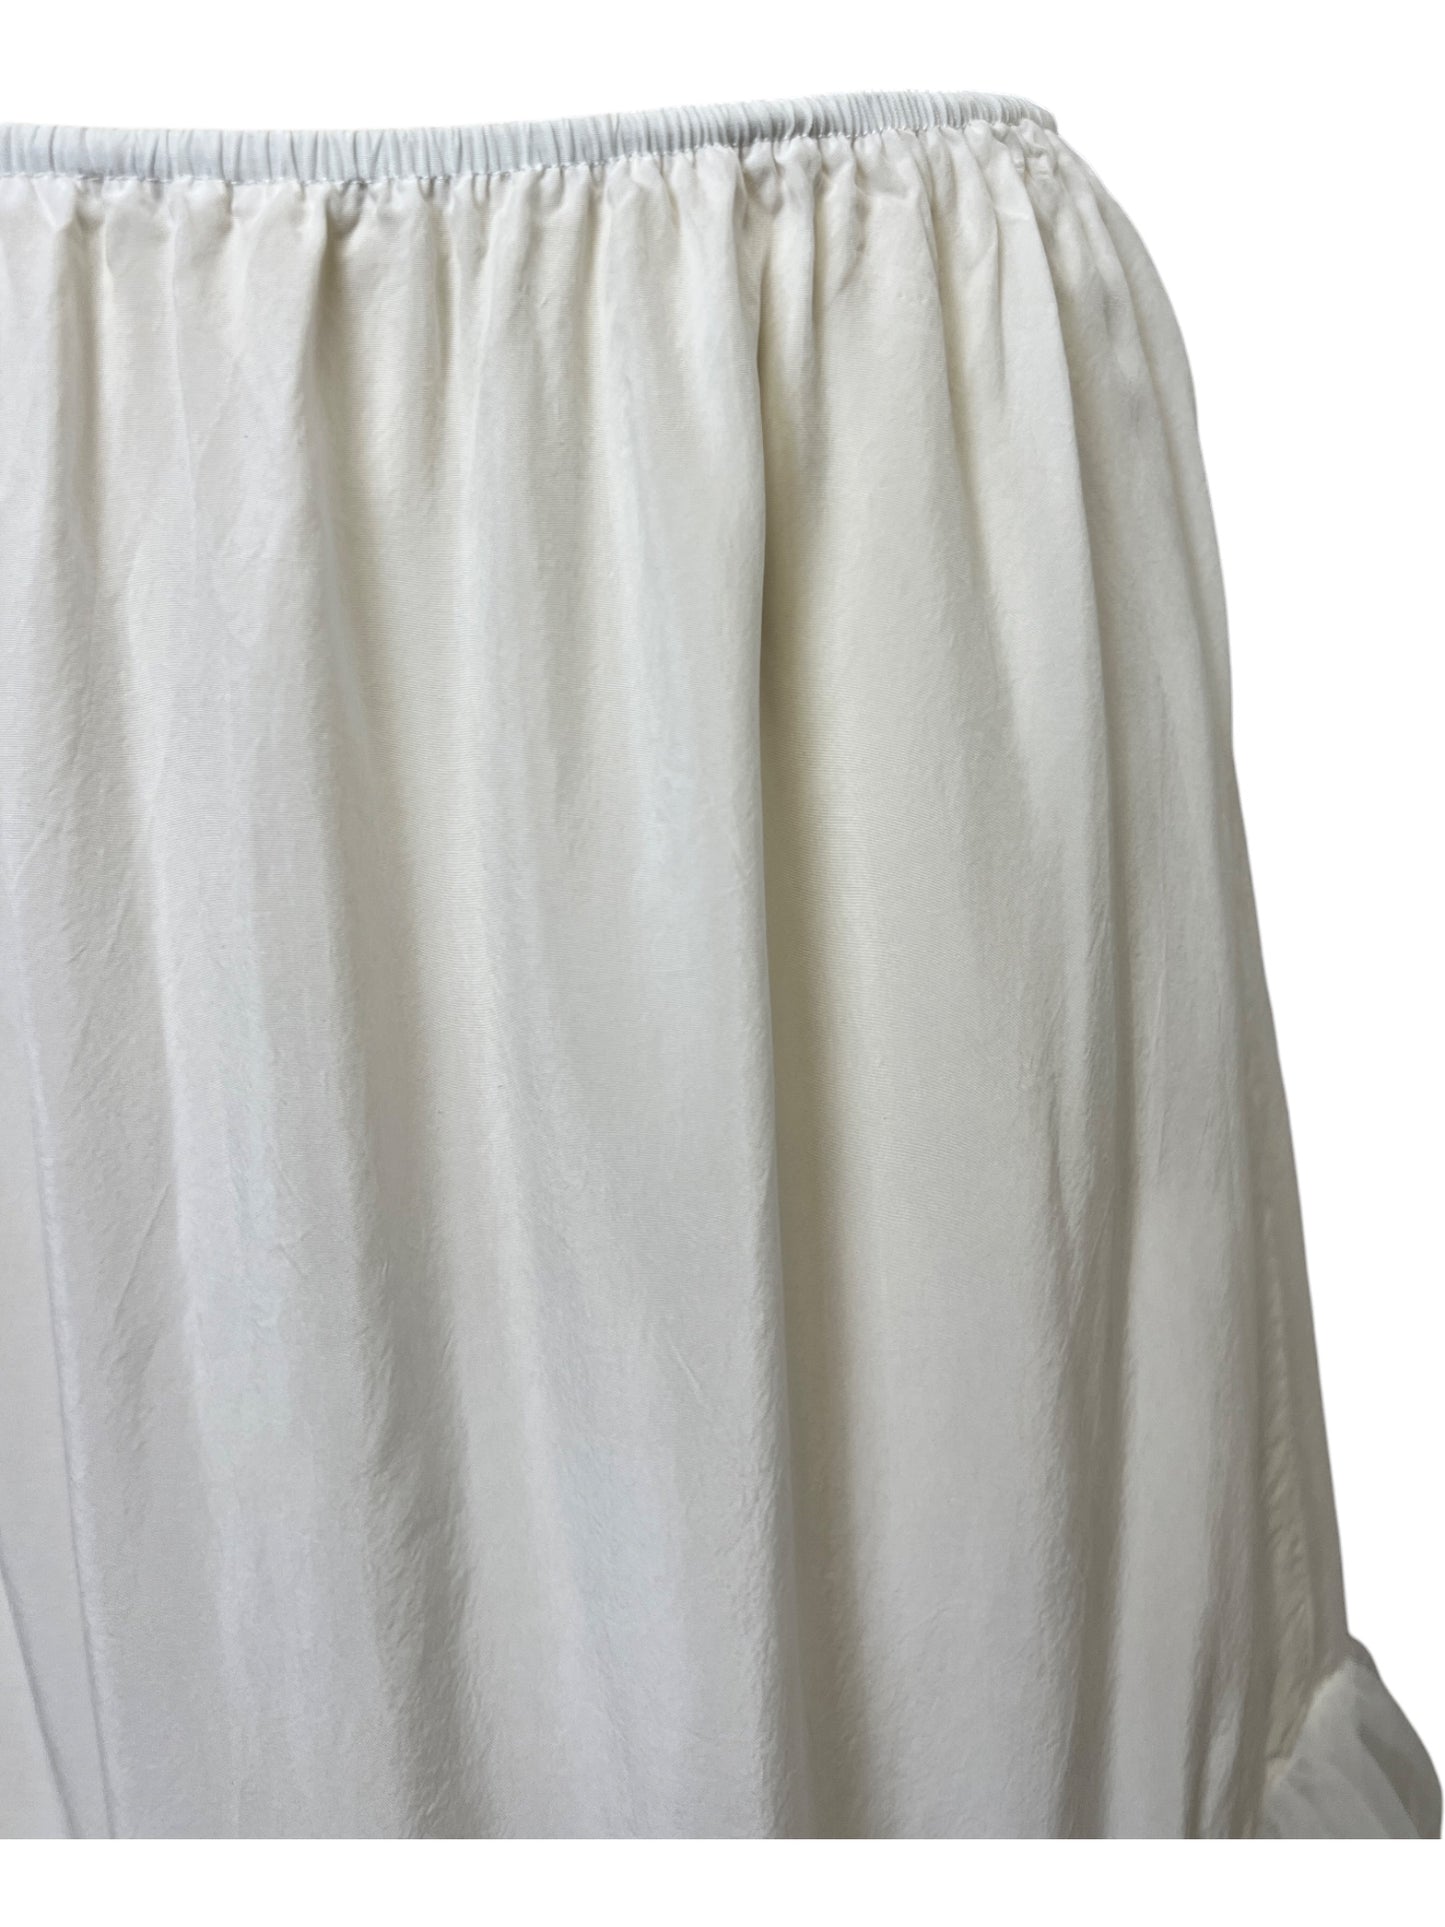 Slip Skirt (2 Colors)